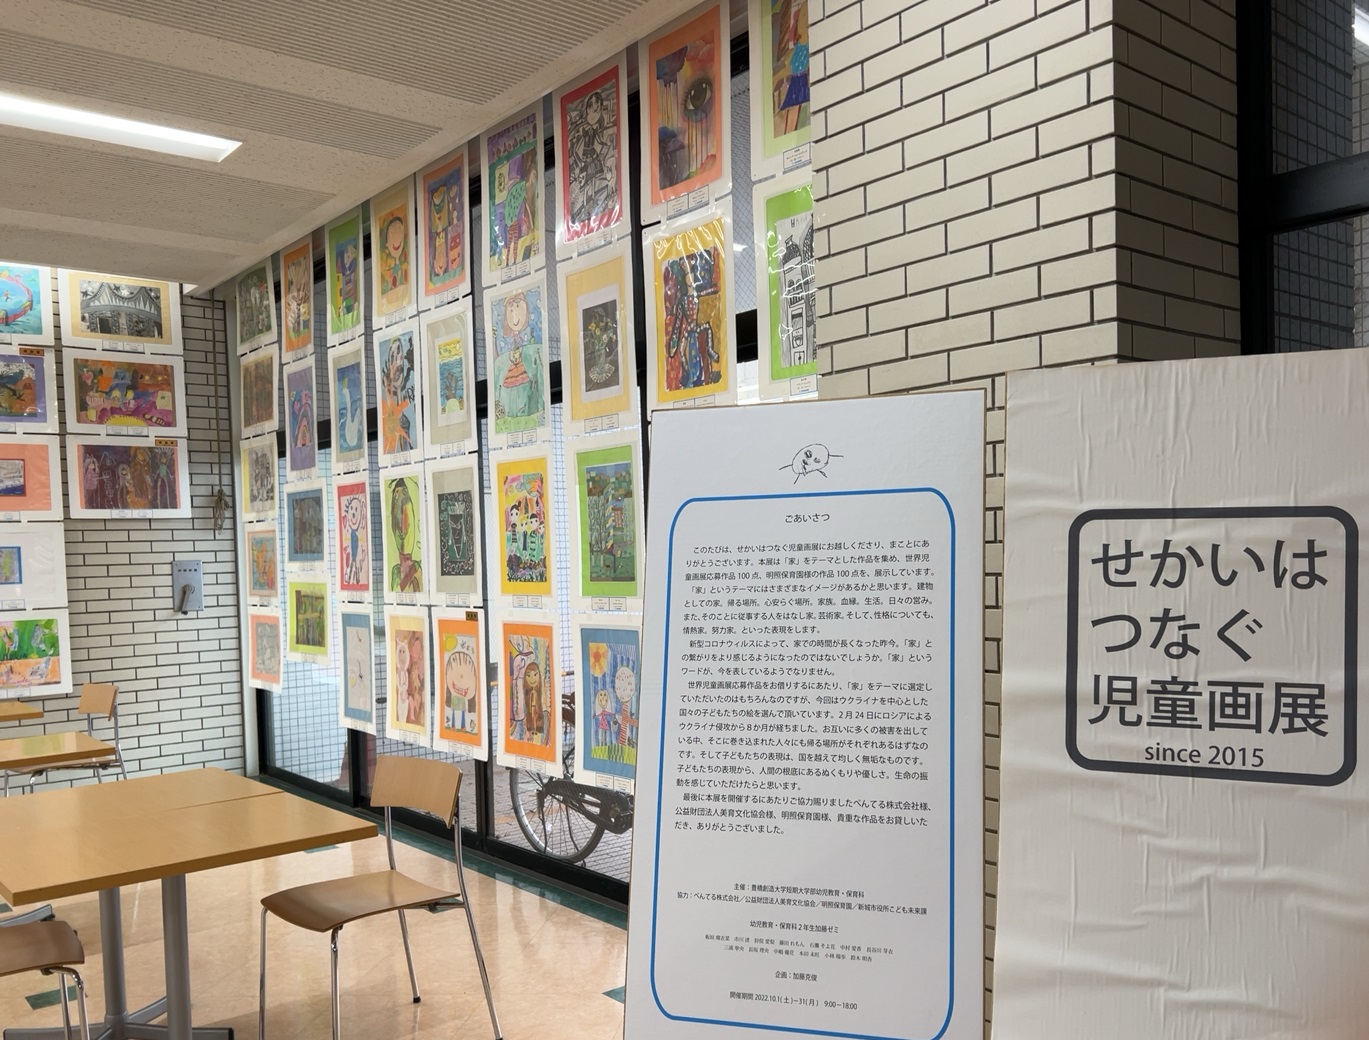 「せかいはつなぐ児童画展」10月31日(月)まで学内にて開催しました。